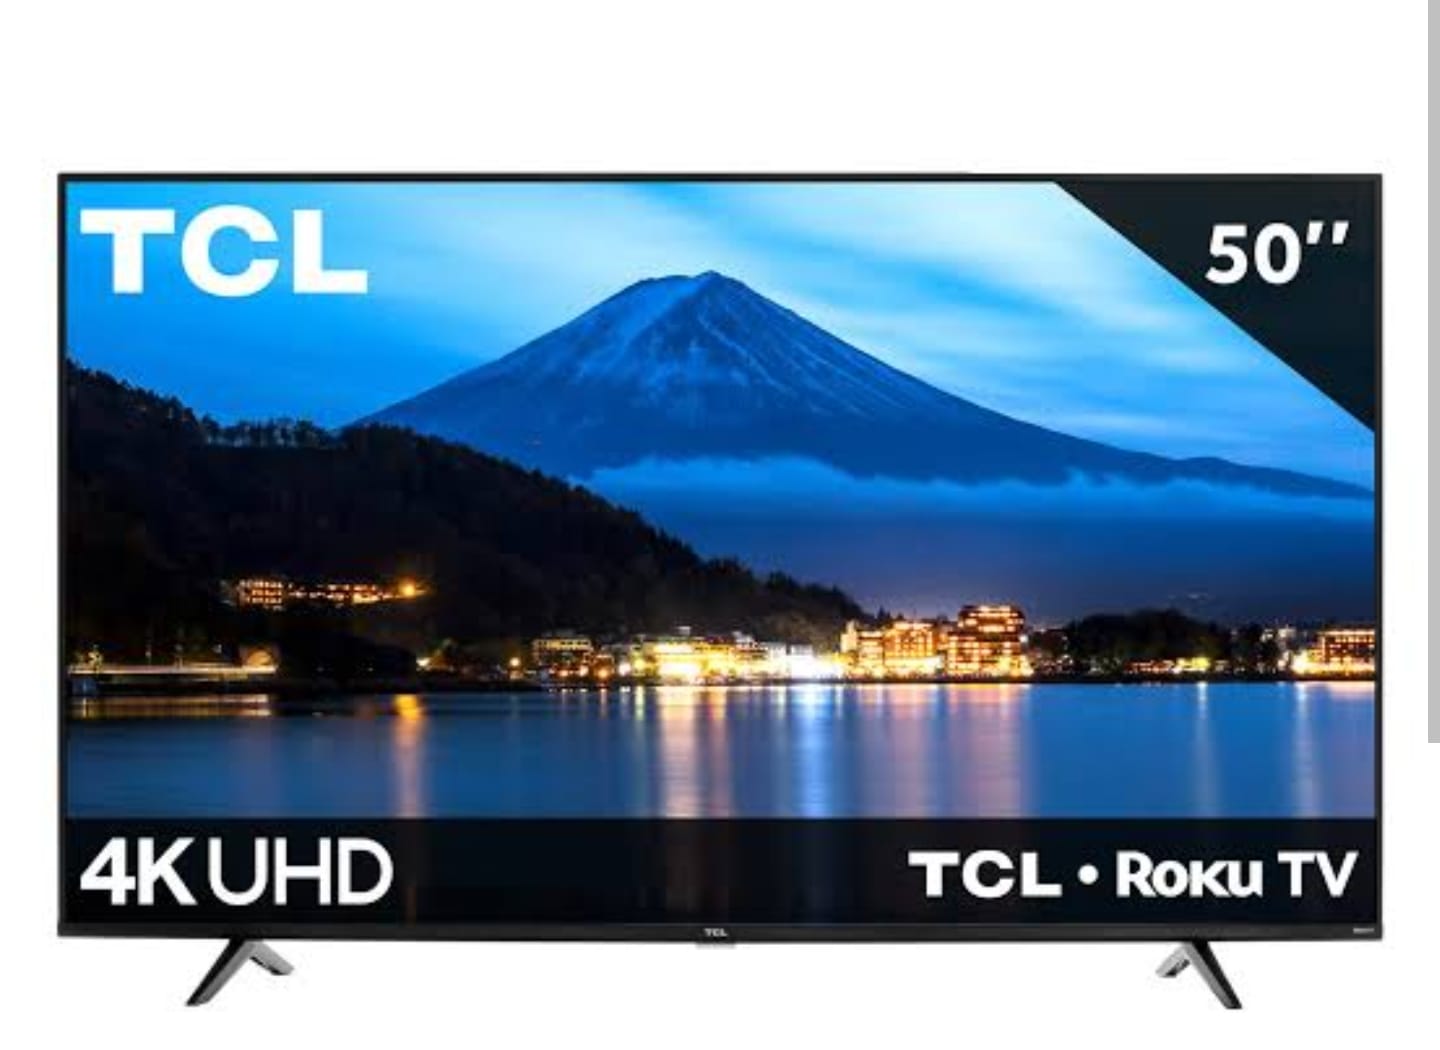 Pantalla TCL QLED smart TV de 55 pulgadas 4K/UHD 55Q550G con Google TV